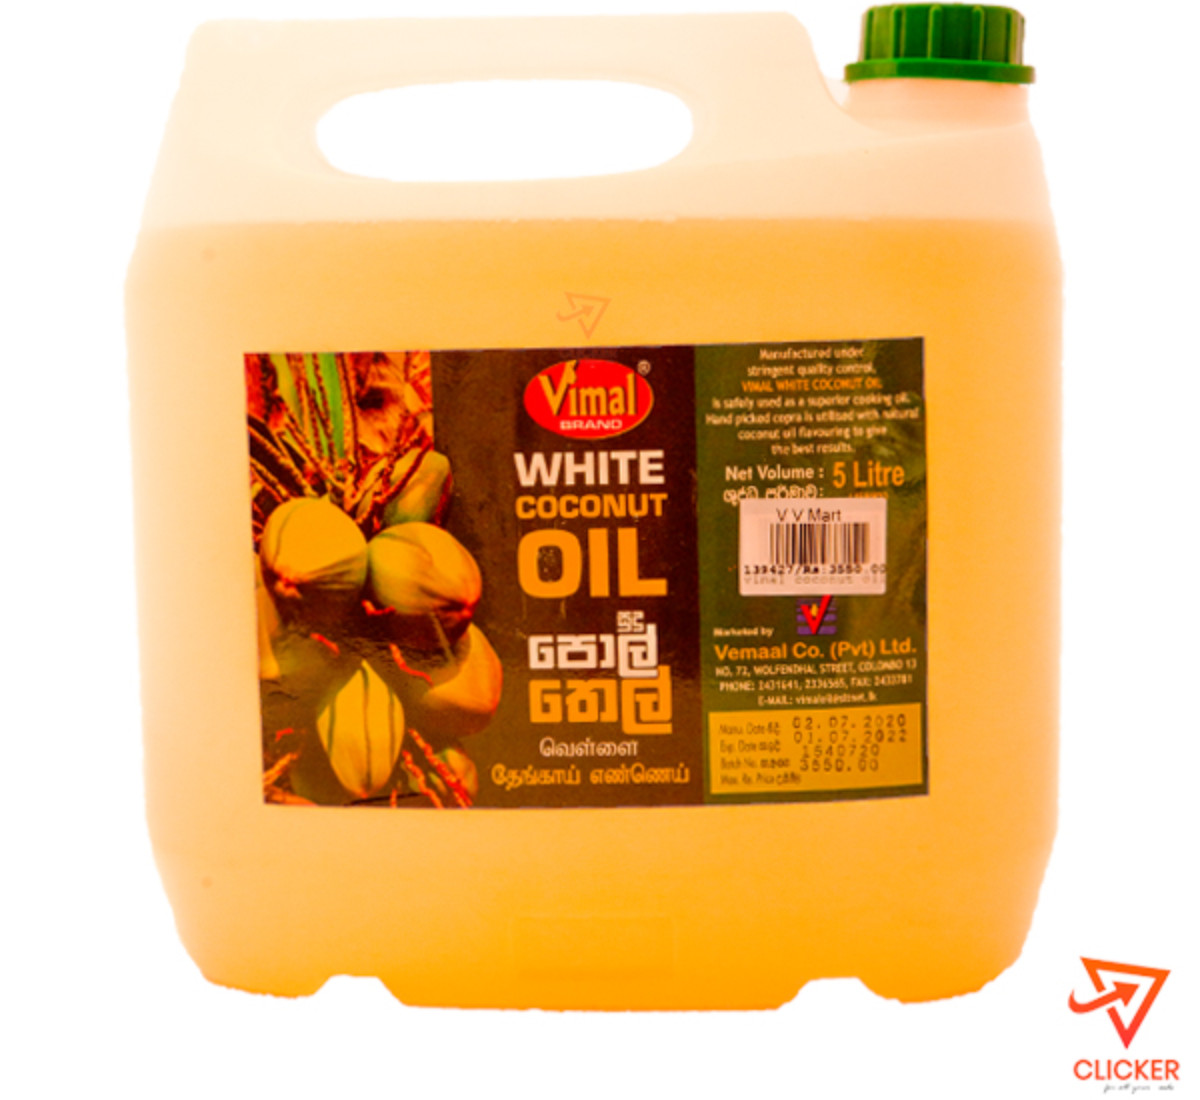 Clicker product 5L VIMAL white coconut oil 876